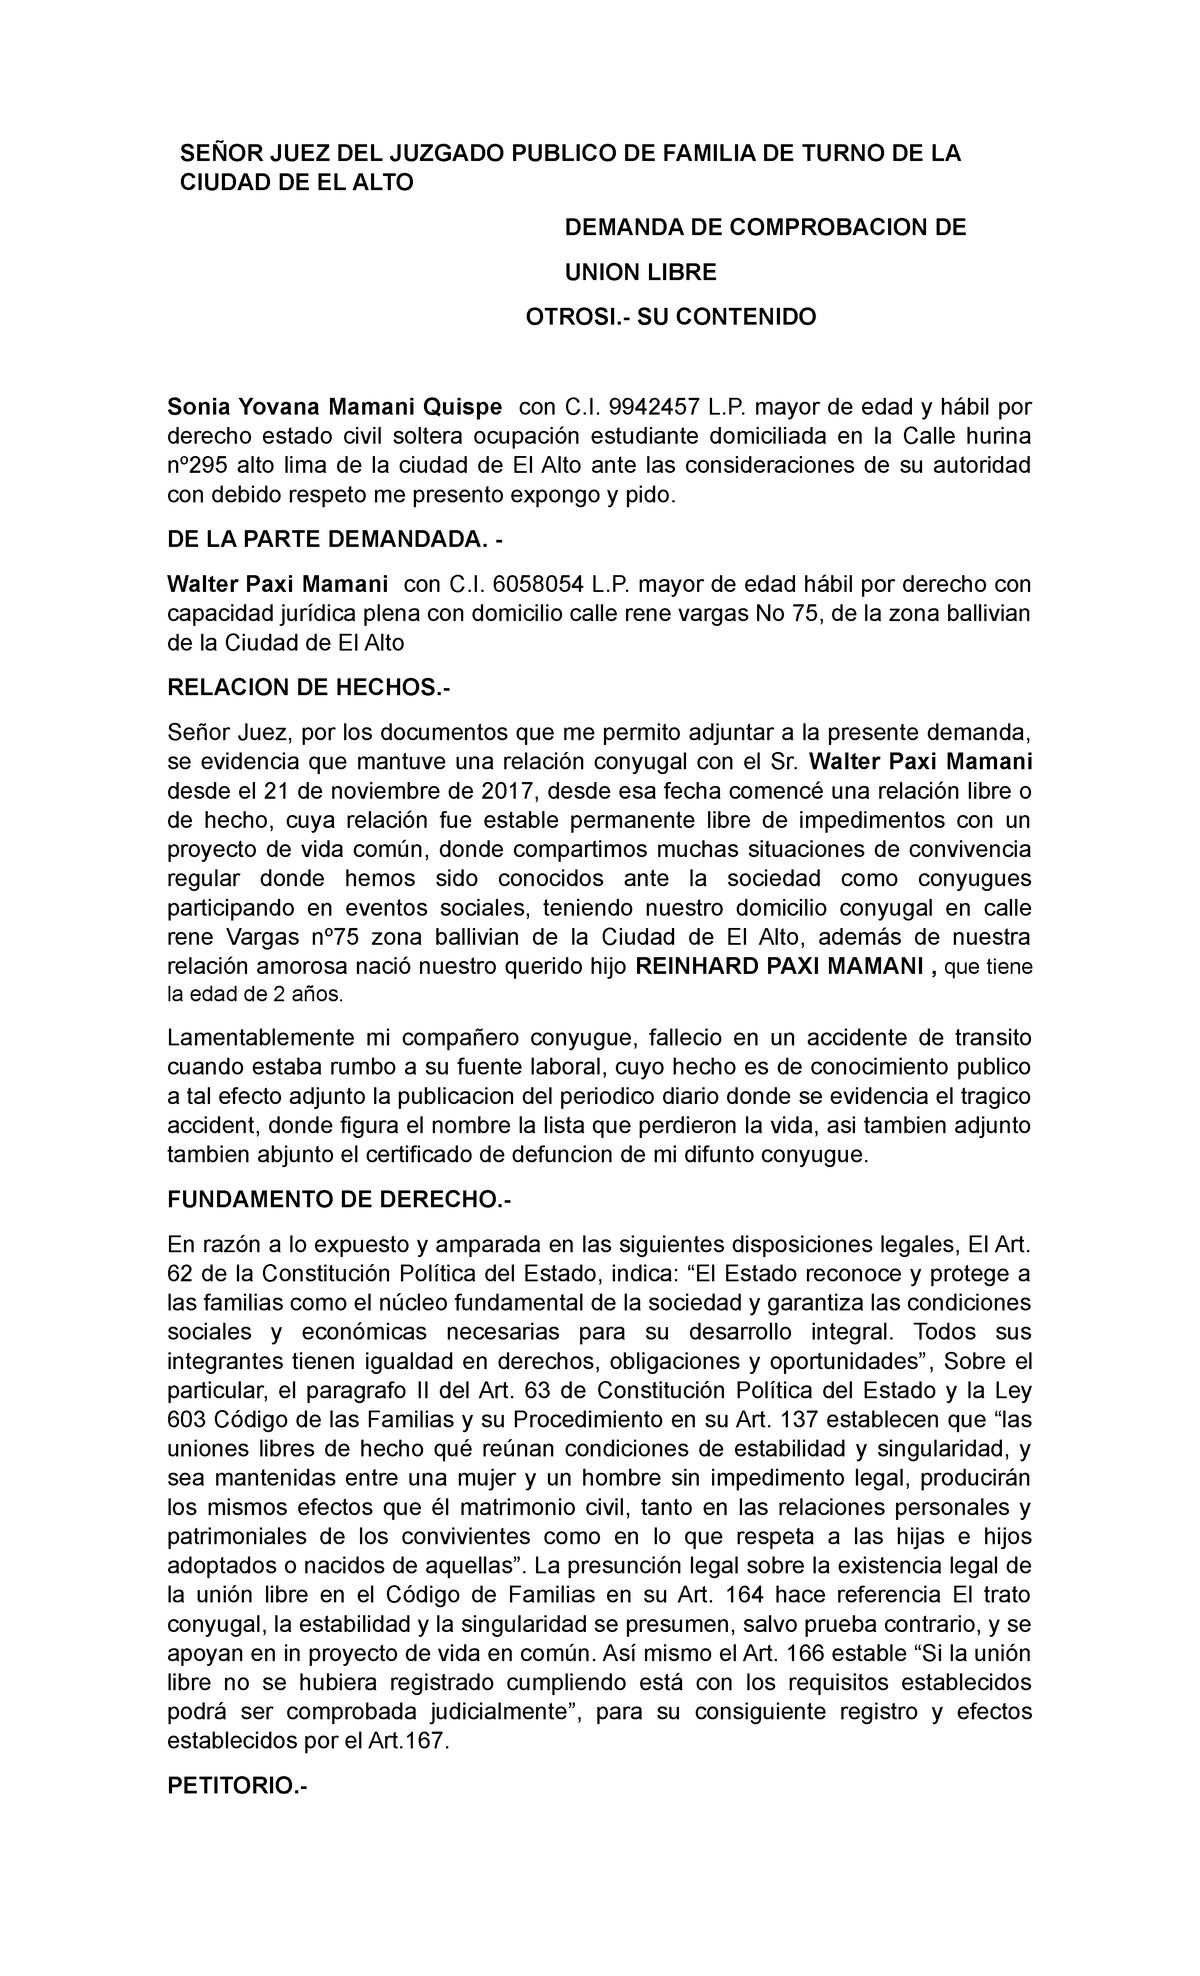 Unión Libre - MODELO de MEMORIAL - SEÑOR JUEZ DEL JUZGADO PUBLICO DE  FAMILIA DE TURNO DE LA CIUDAD - Studocu